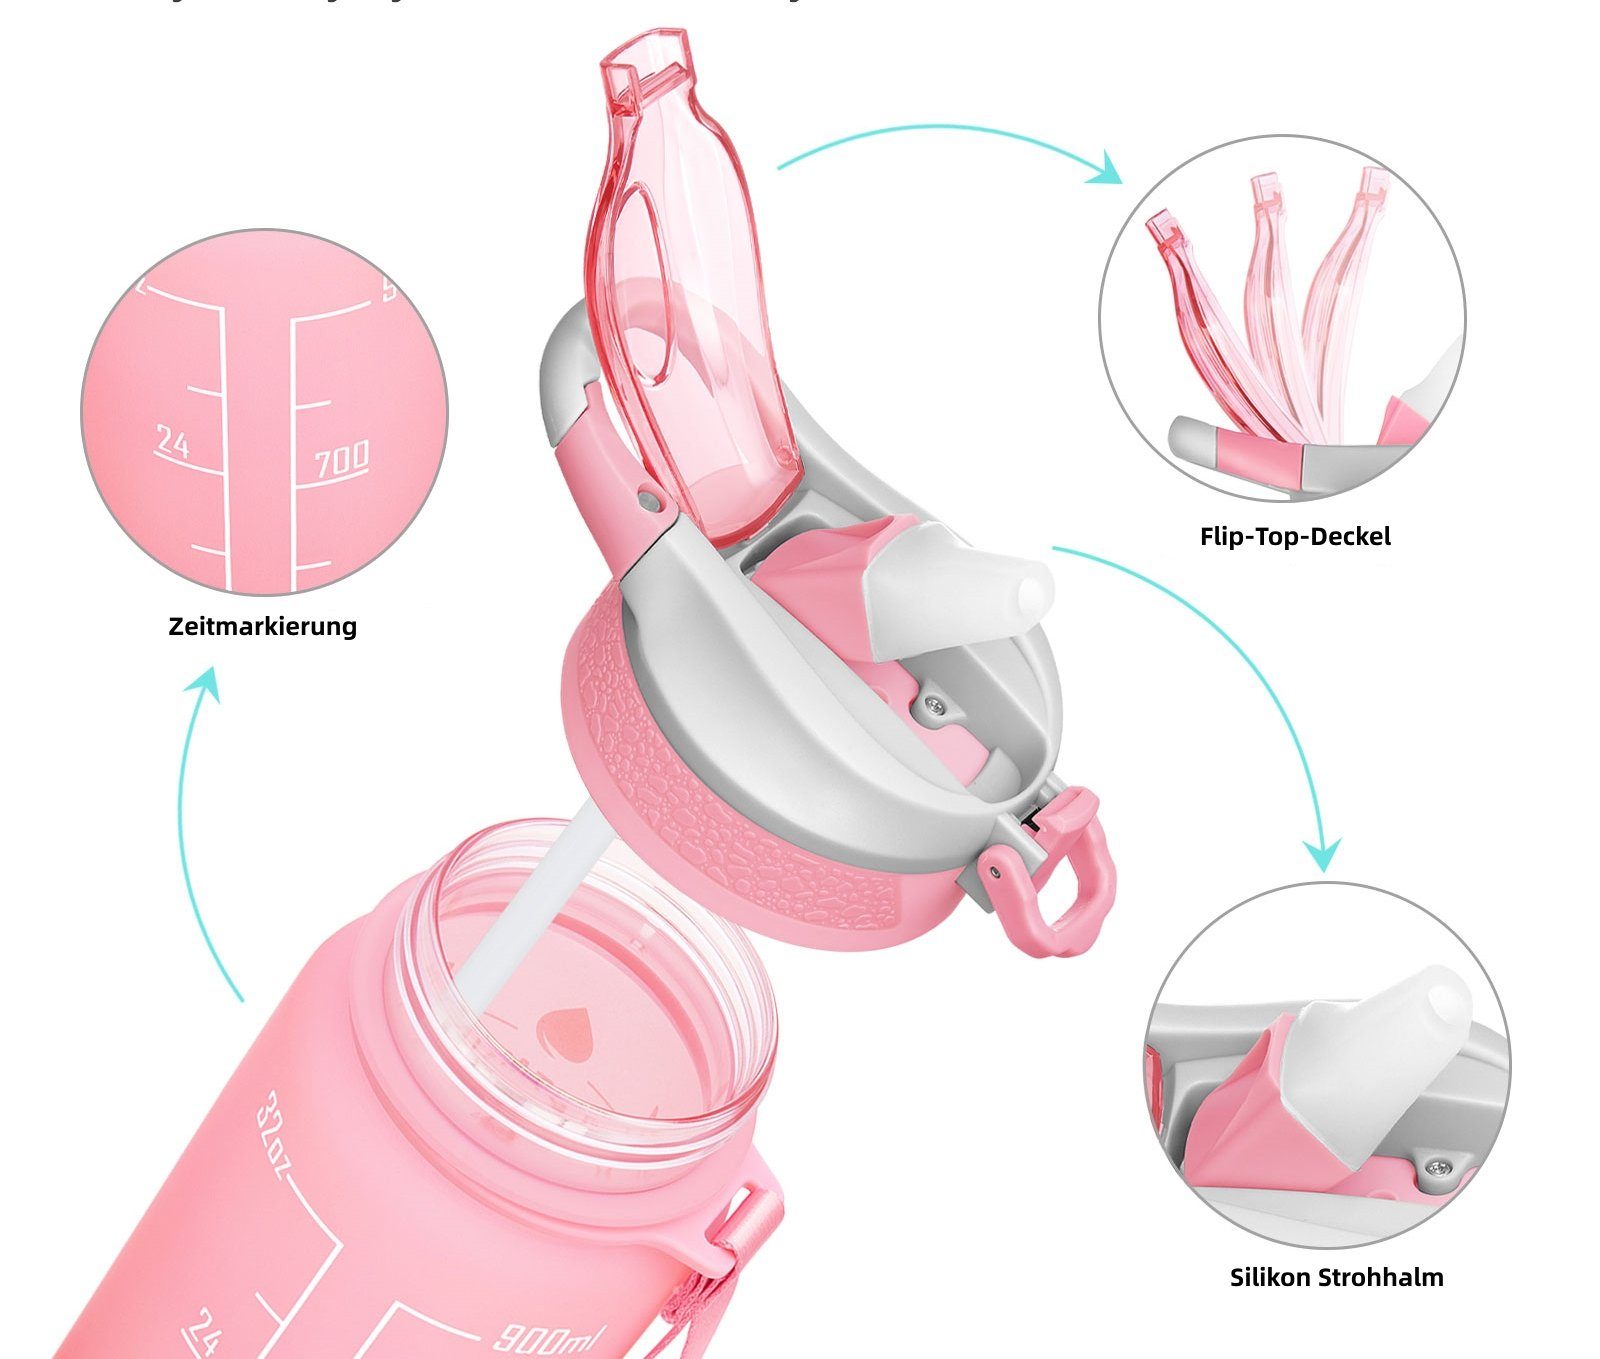 Liter Trinkflasche BPA-Frei Sport Wasserflasche Camping 1 OKWISH Fahrrad Wandern Sportflasche 1L, Fitness Zeitmarkierung Pink/Blau Auslaufsicher Outdoor Strohhalm und